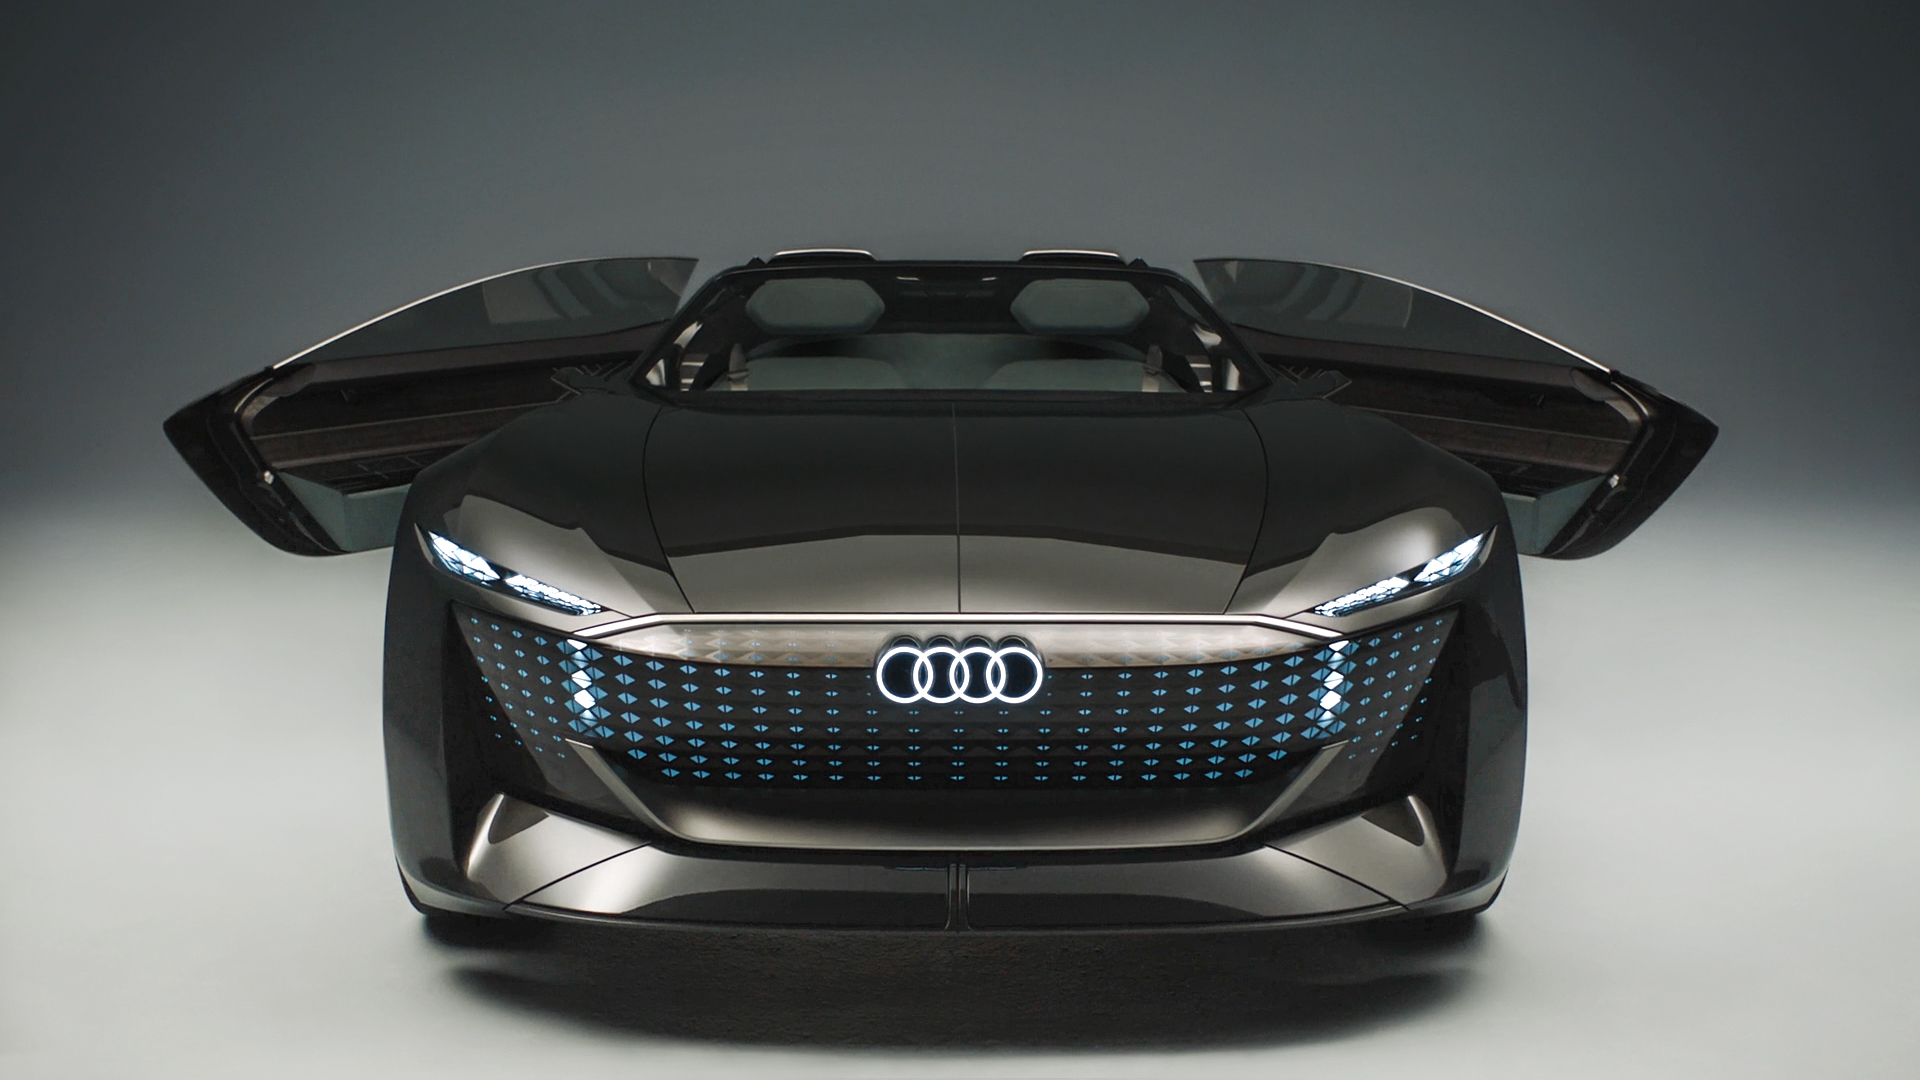 Vista frontale del concept Audi skysphere.